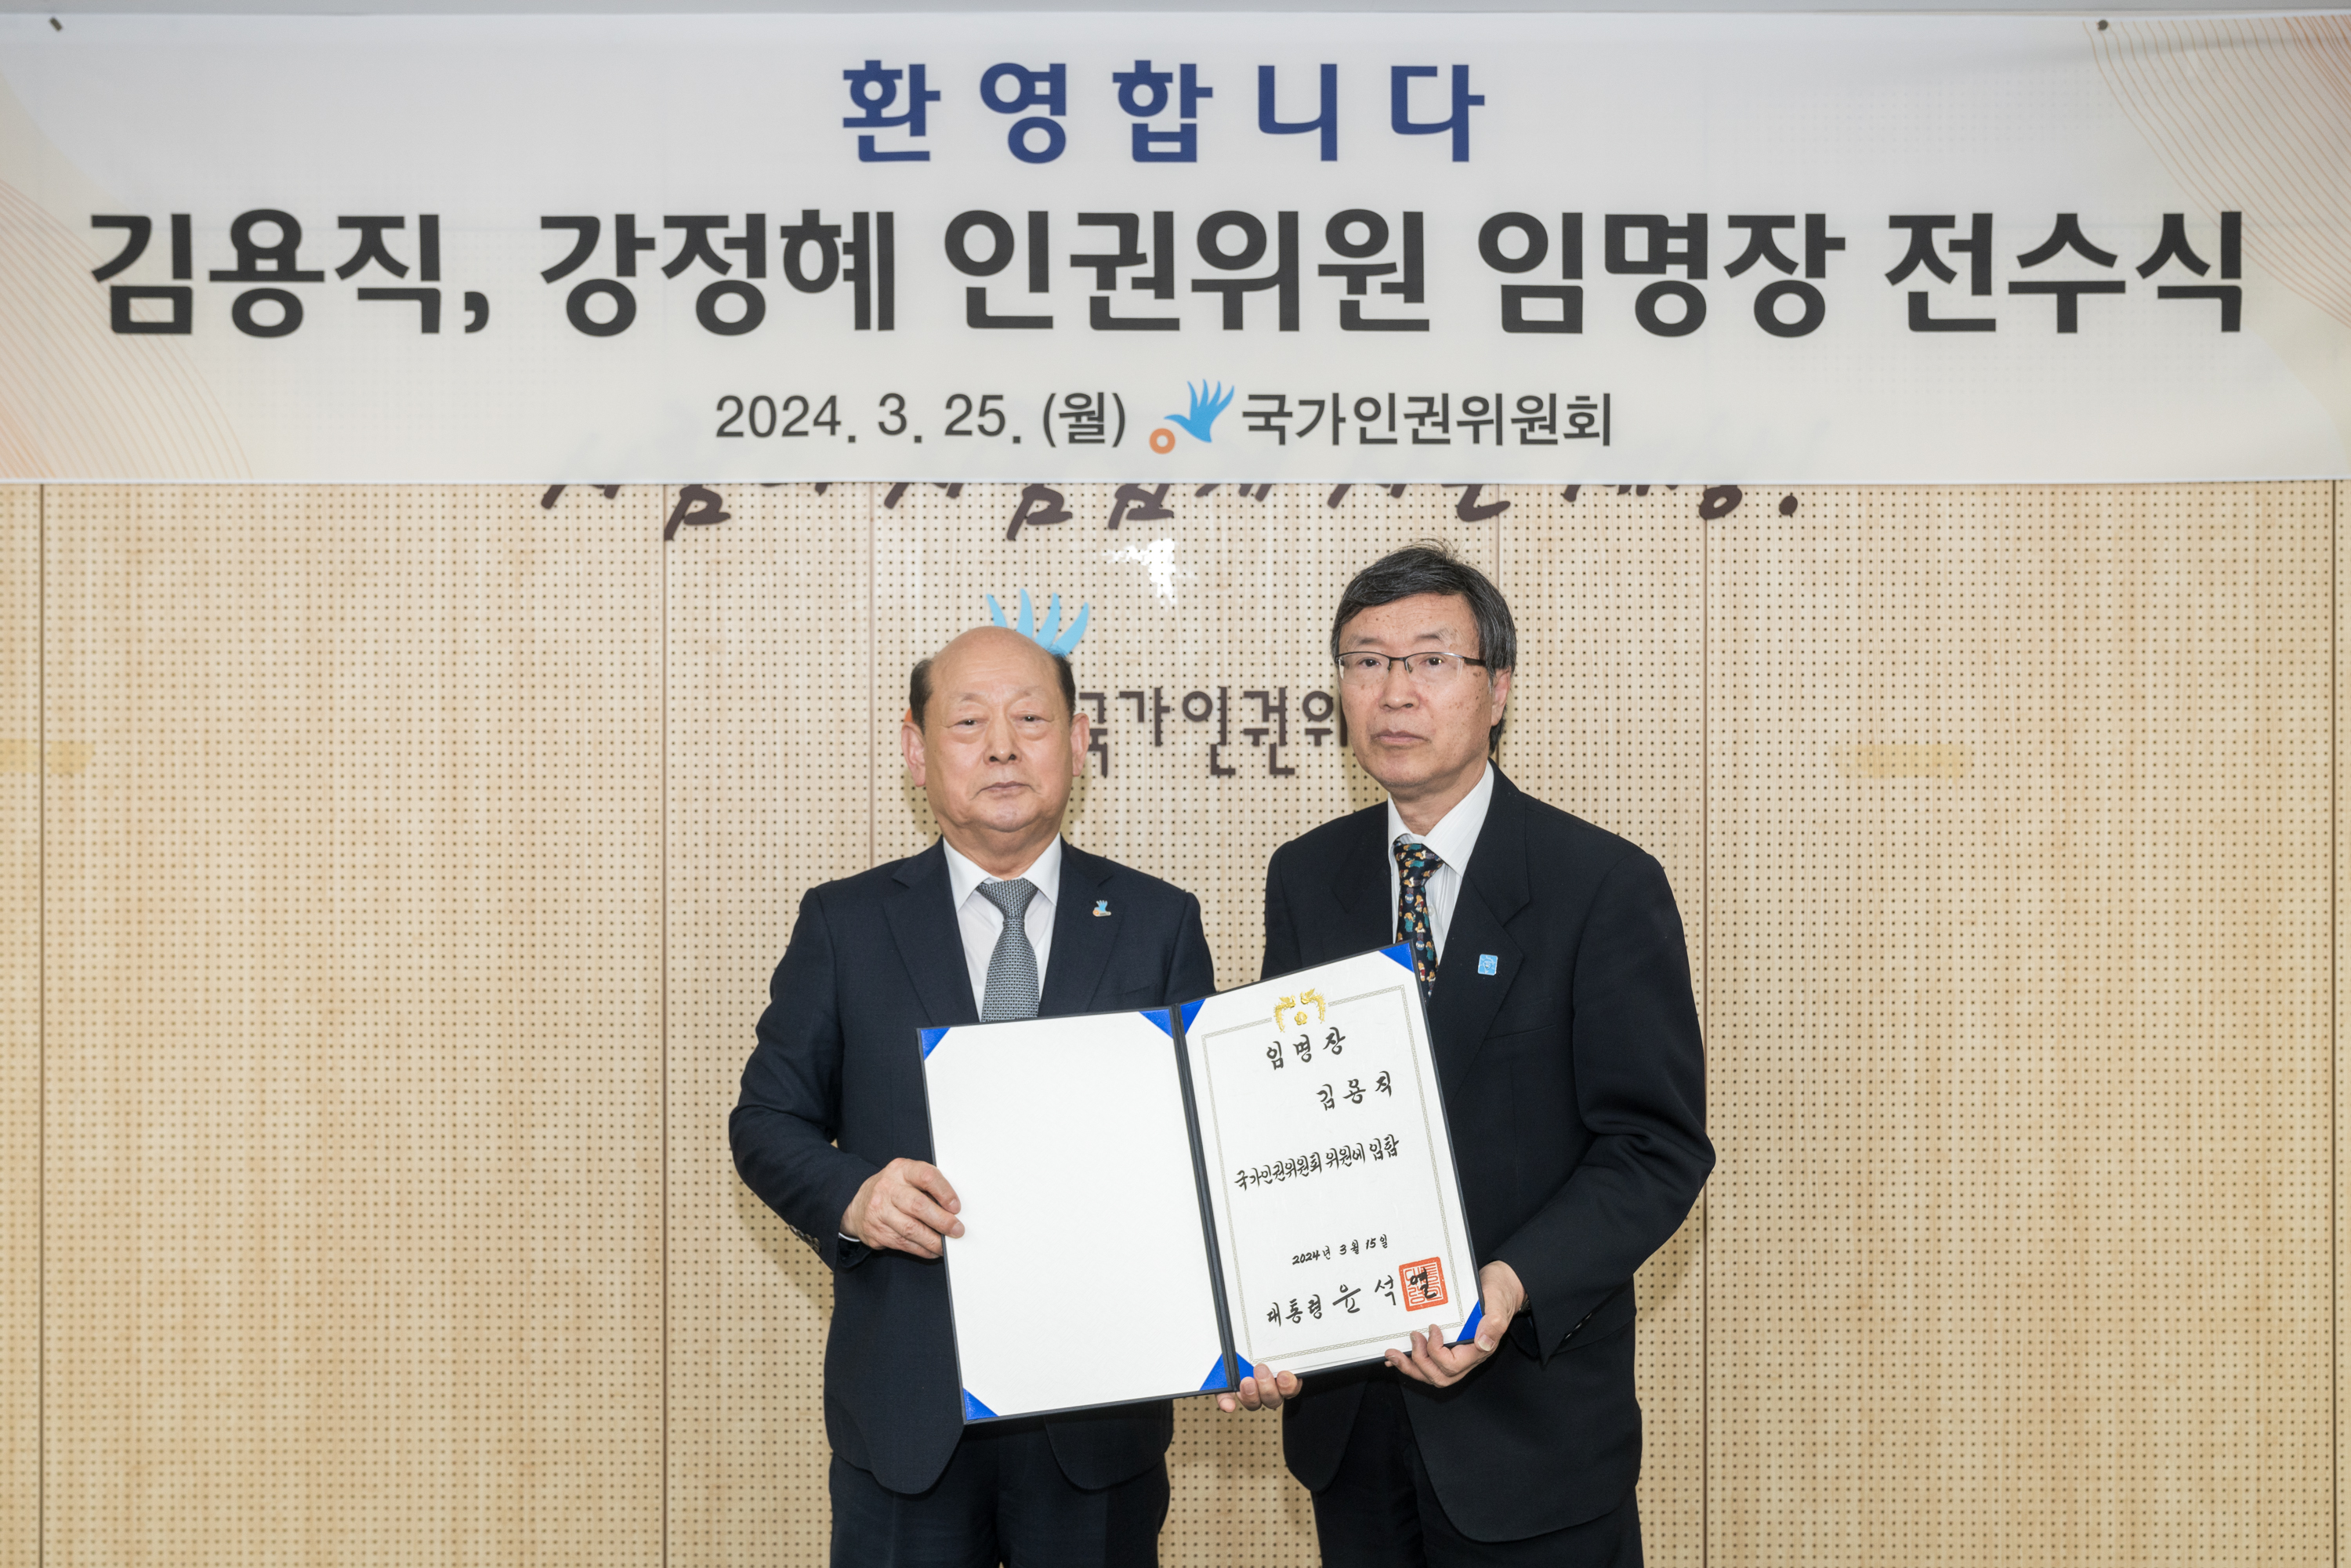 국가인권위원회(위원장 송두환)는 3월 25일 인권위원 이임식 및 임명장 전수식을 개최하였습니다.